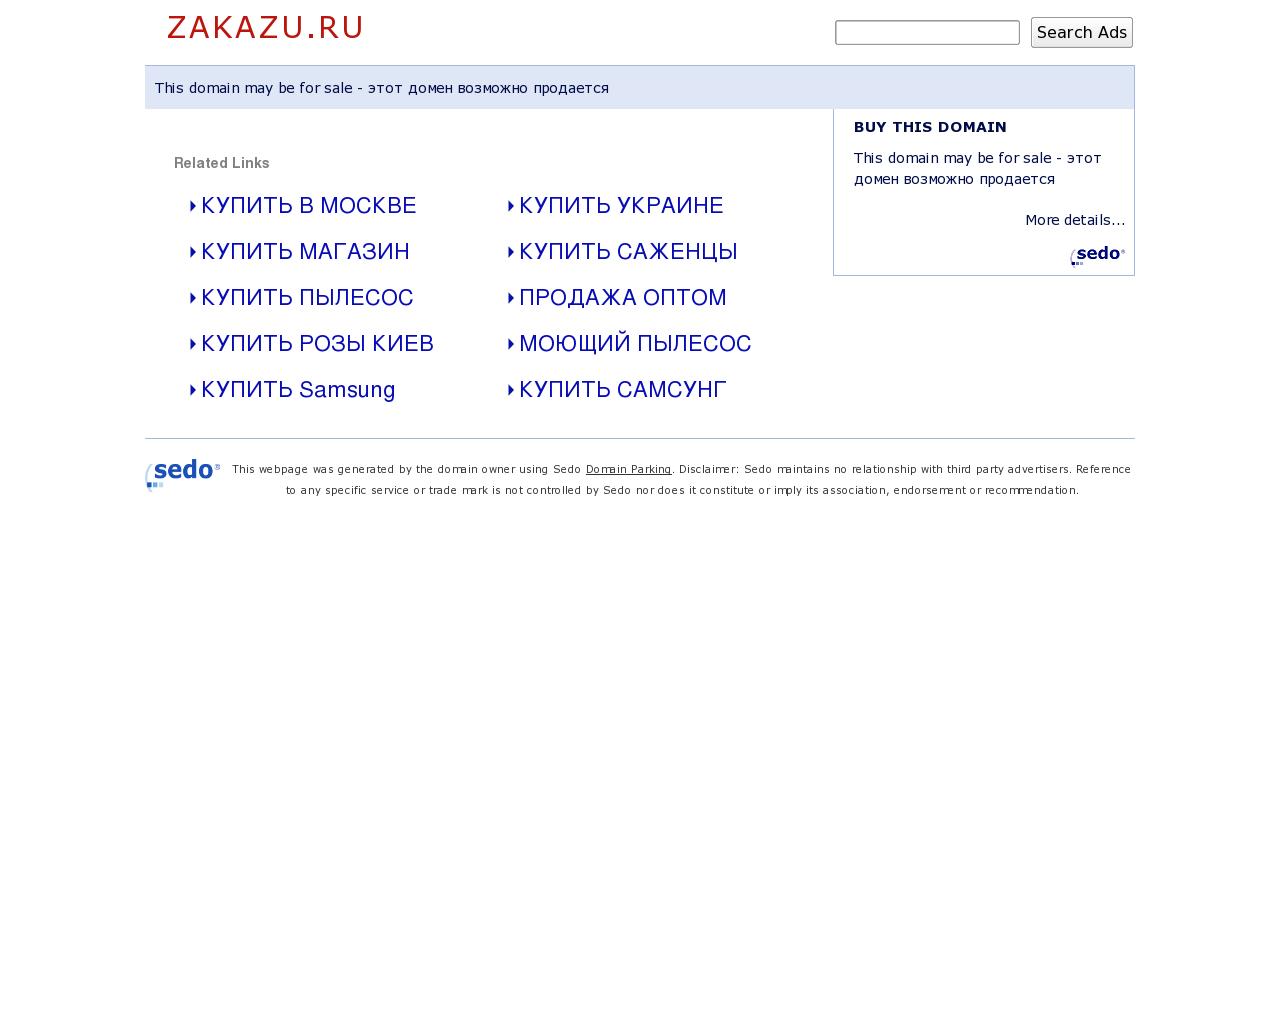 Изображение сайта zakazu.ru в разрешении 1280x1024